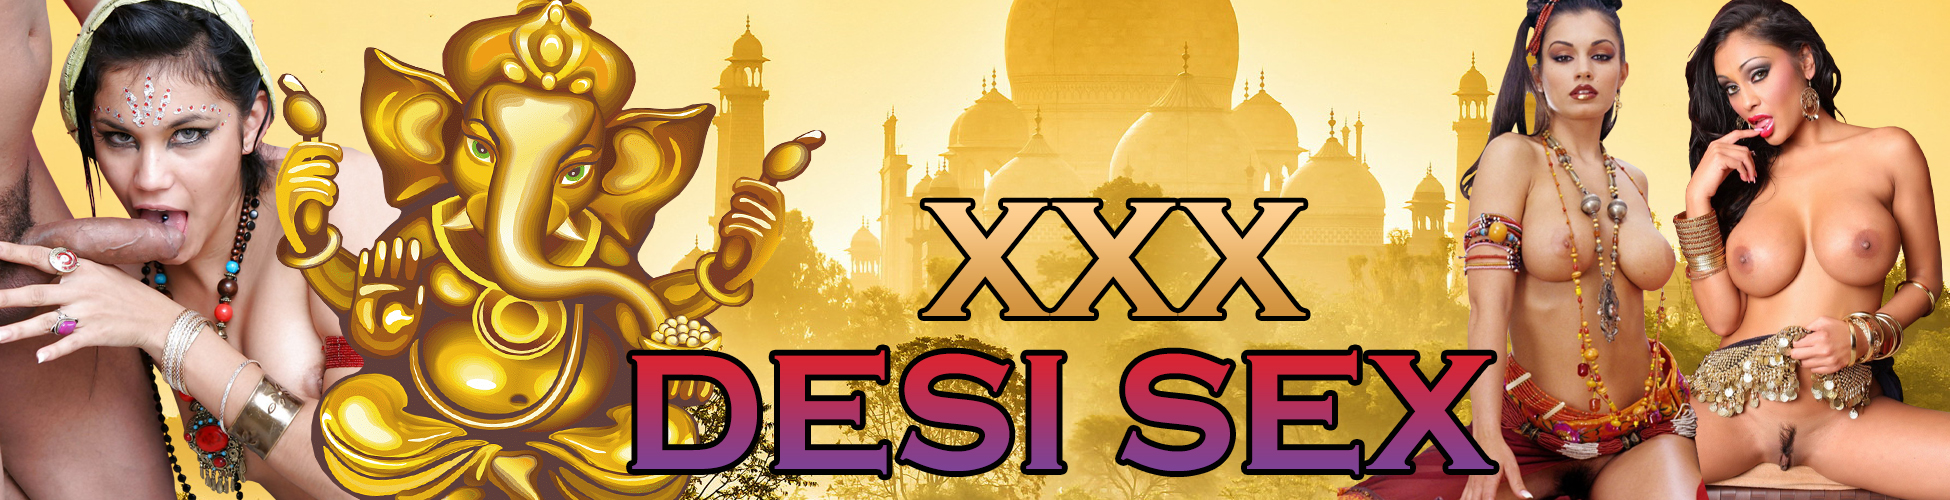 Sex Sex Xxxx Dasi - XXX Desi Sex â¤ï¸ï¸ Hot HD Hindi Porn